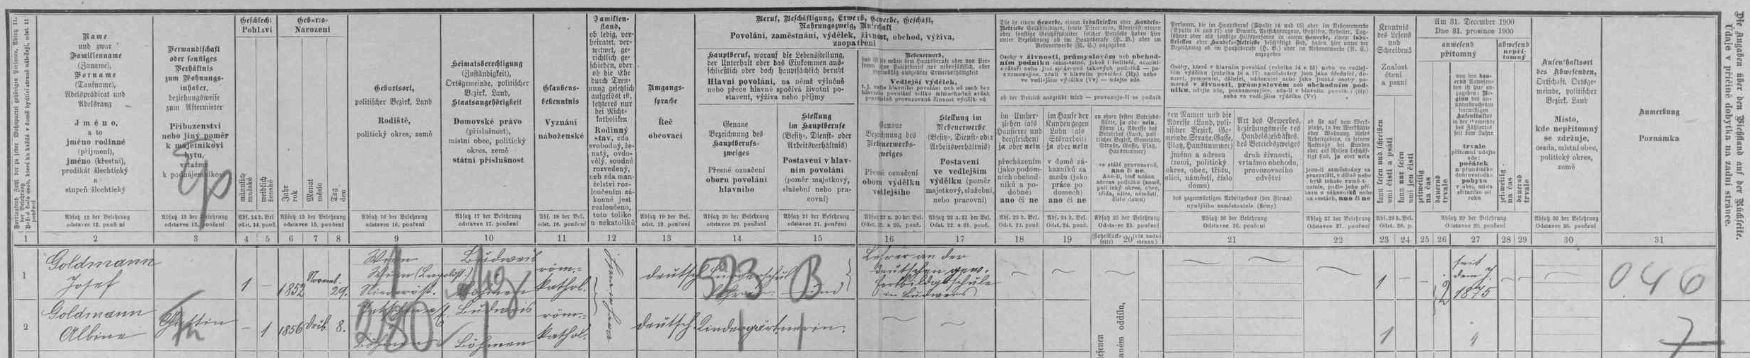 Na archu sčítání lidu z roku 1900 jsou manželé Goldmannovi psáni na adrese "Krausgasse Nr. 116"